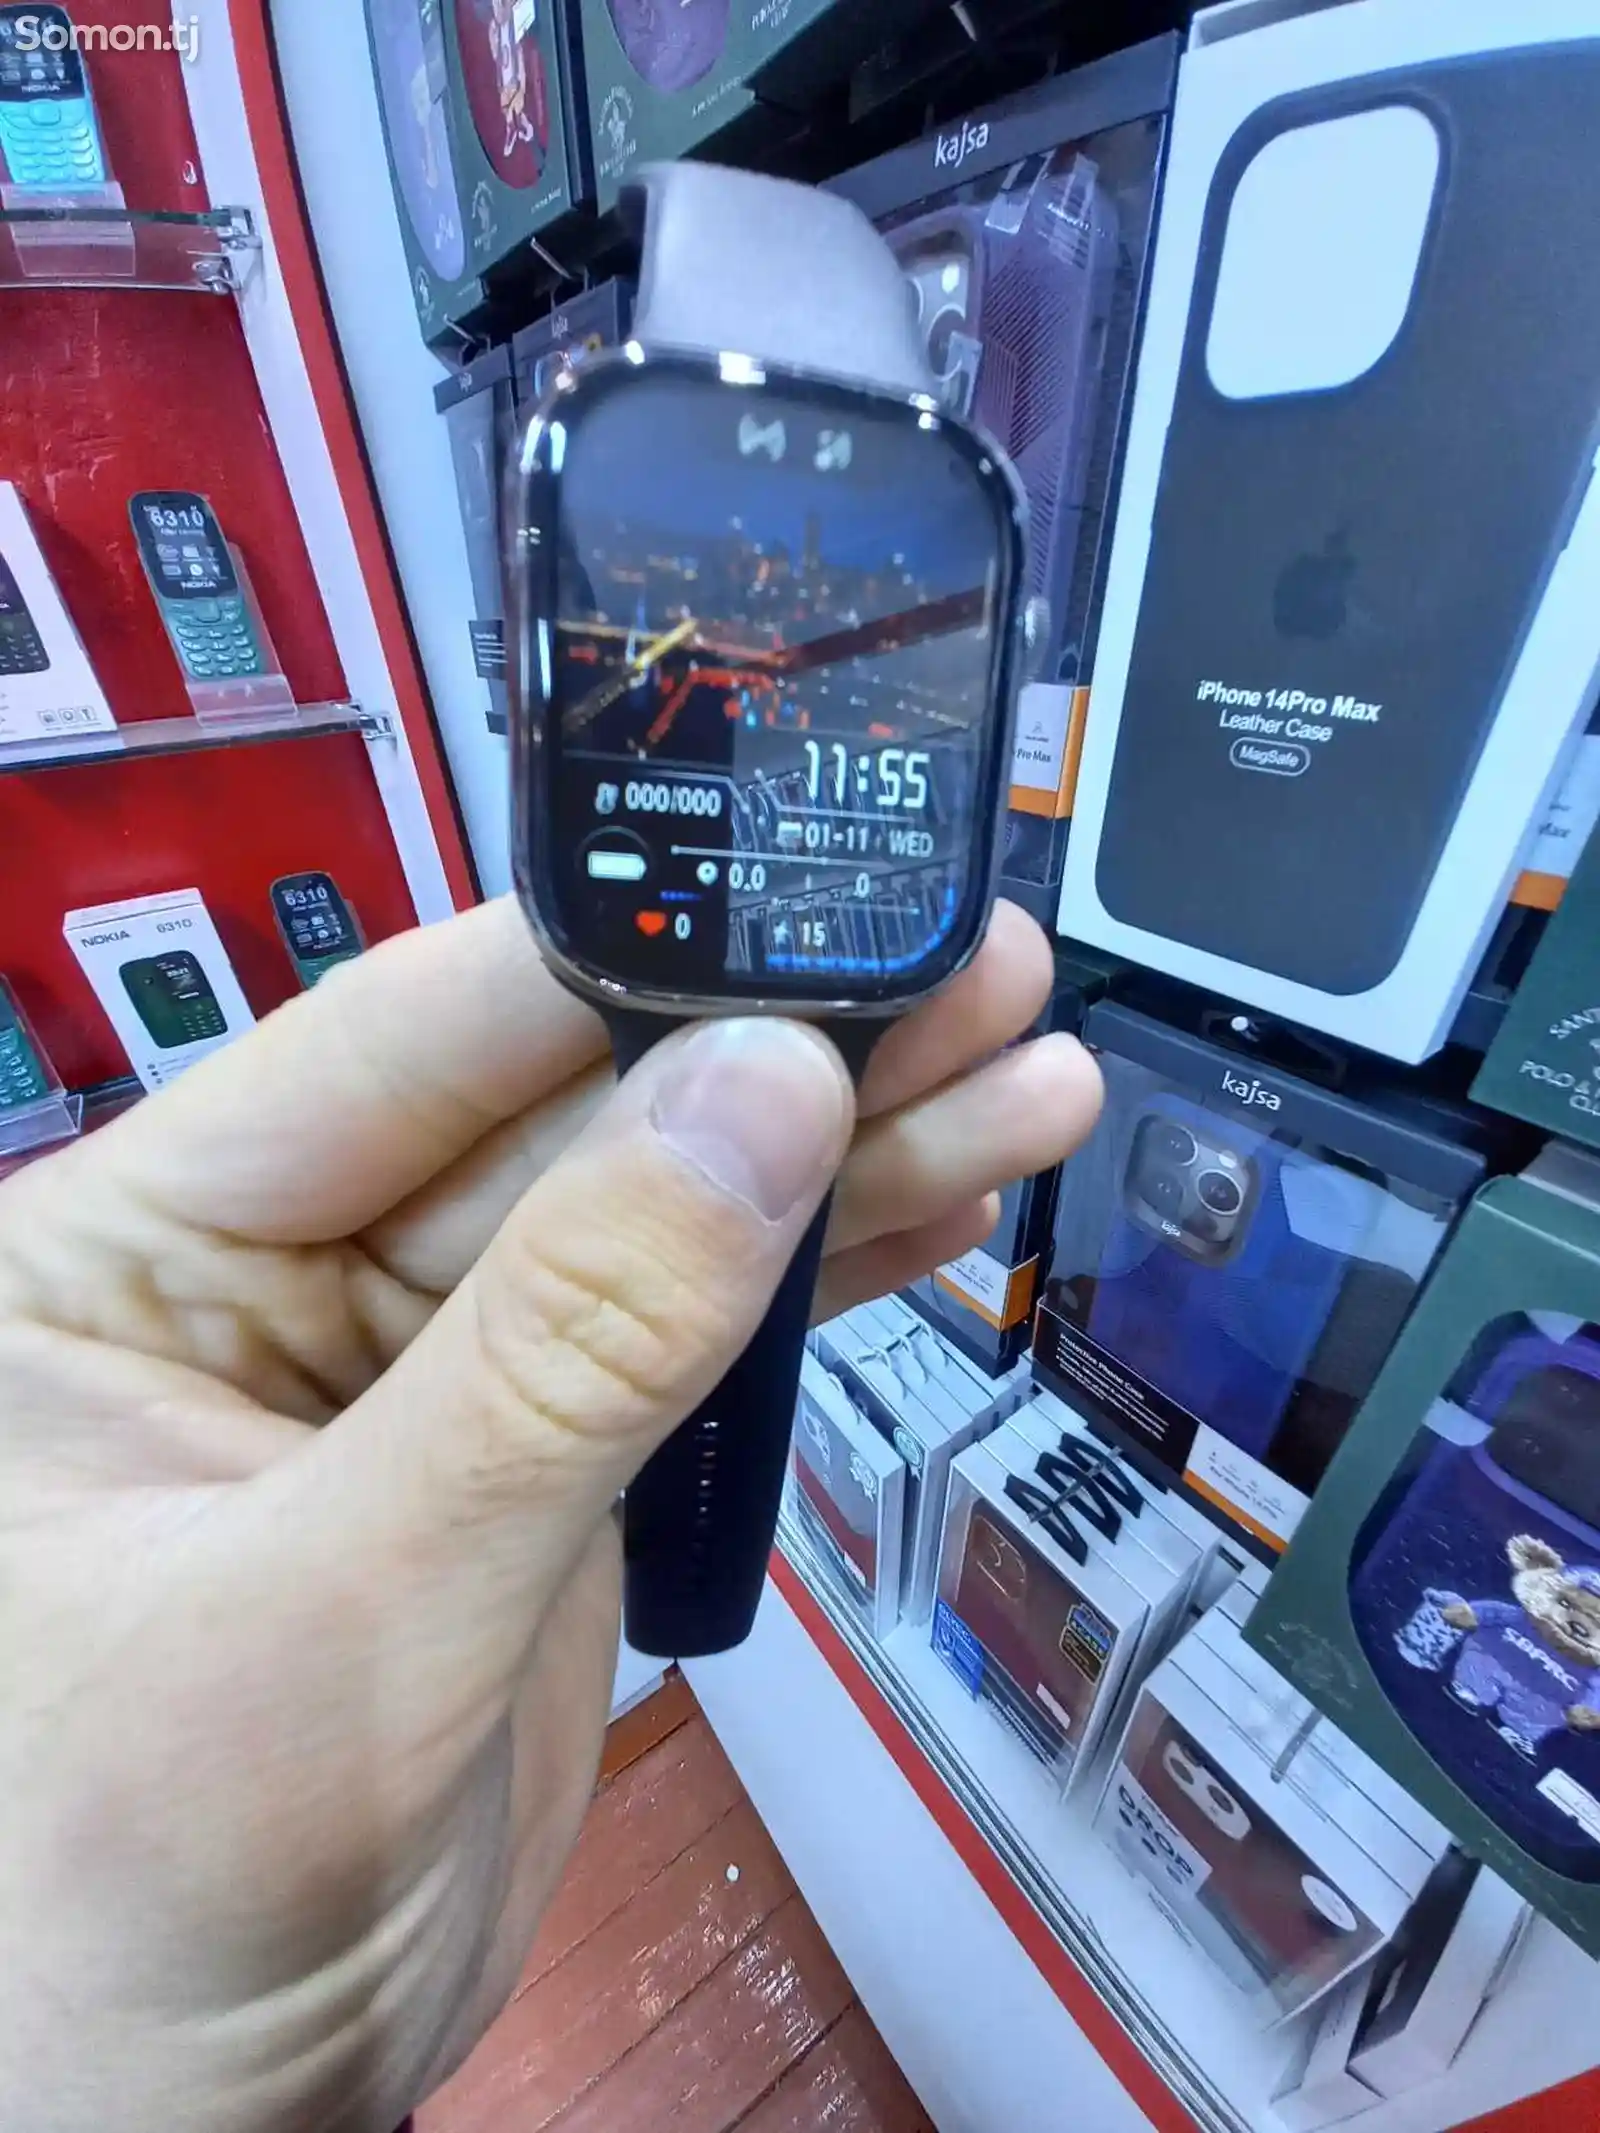 Смарт часы T900 Pro Max 9 серия-7